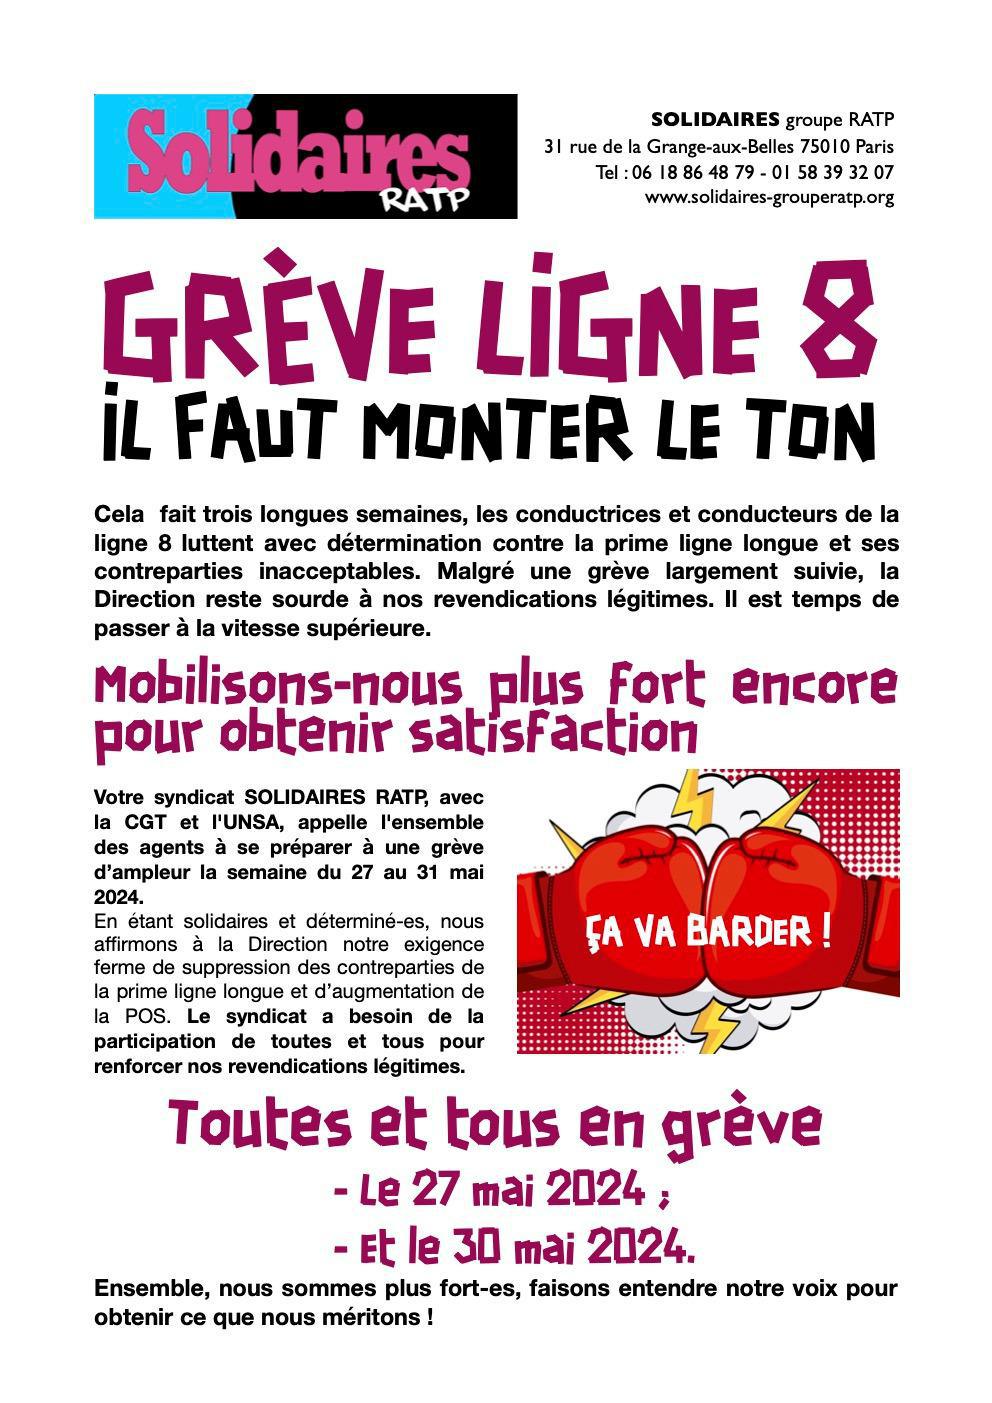 Solidaires RATP // Grève ligne 8, il faut monter le ton !